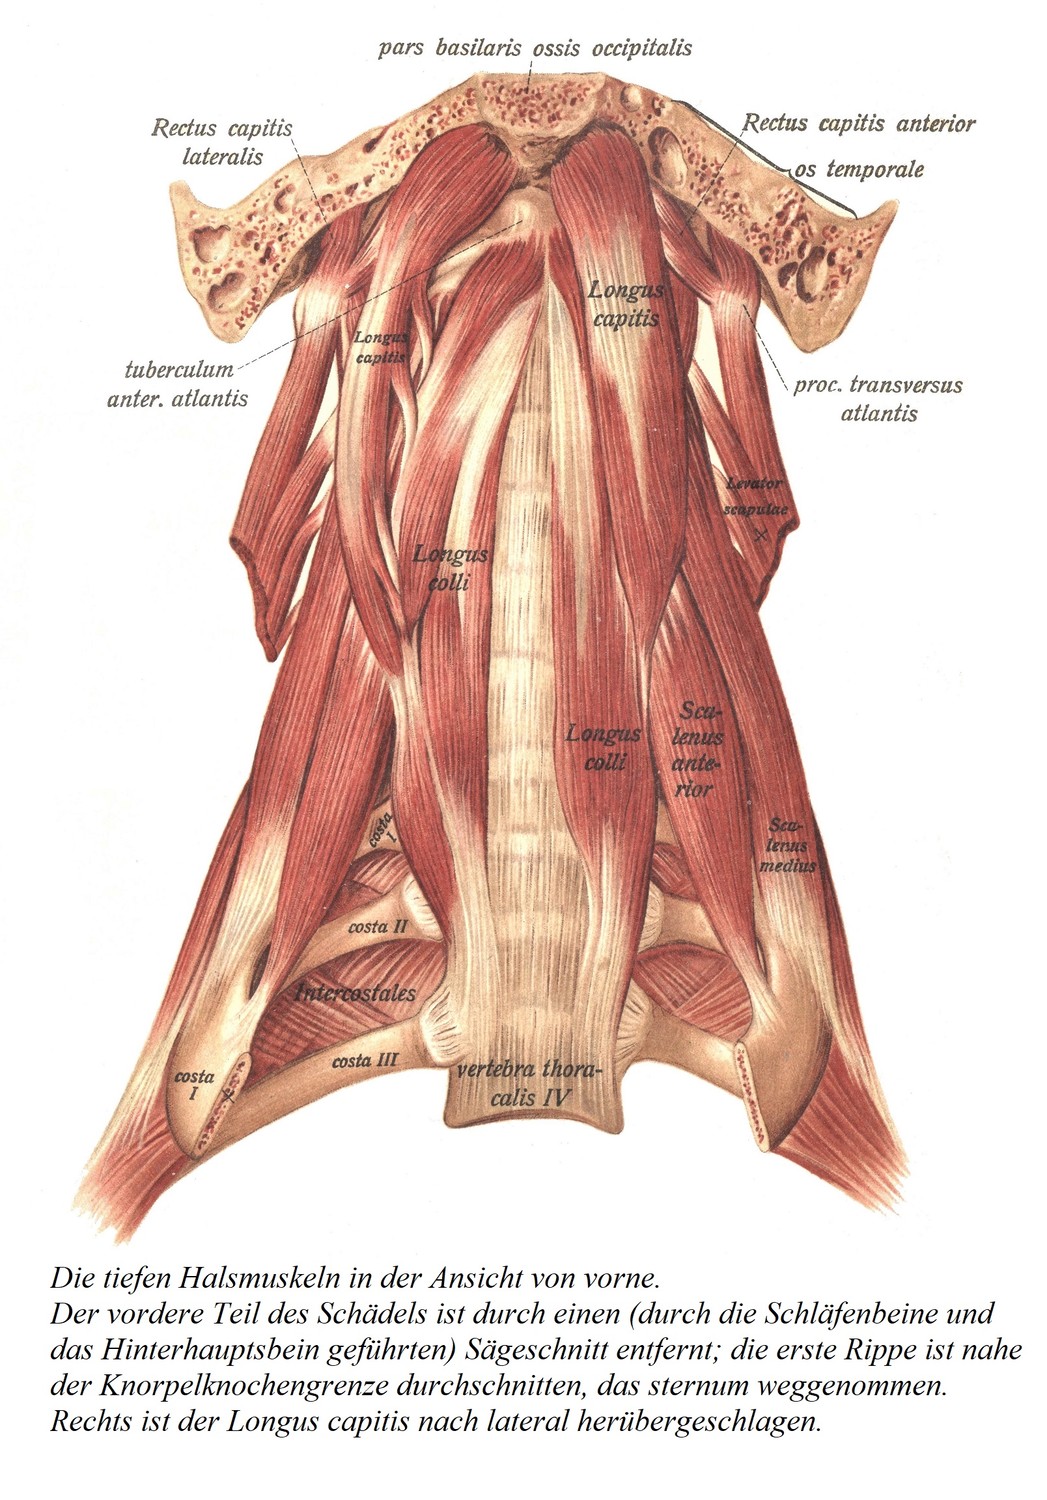 Вид спереди на глубокие мышцы шеи. Переднюю часть черепа удаляют пильным разрезом (через височную и затылочную кости); первое ребро рассечено у хрящево-костной границы, грудина удалена. Справа длинная мышца головы загибается латерально.